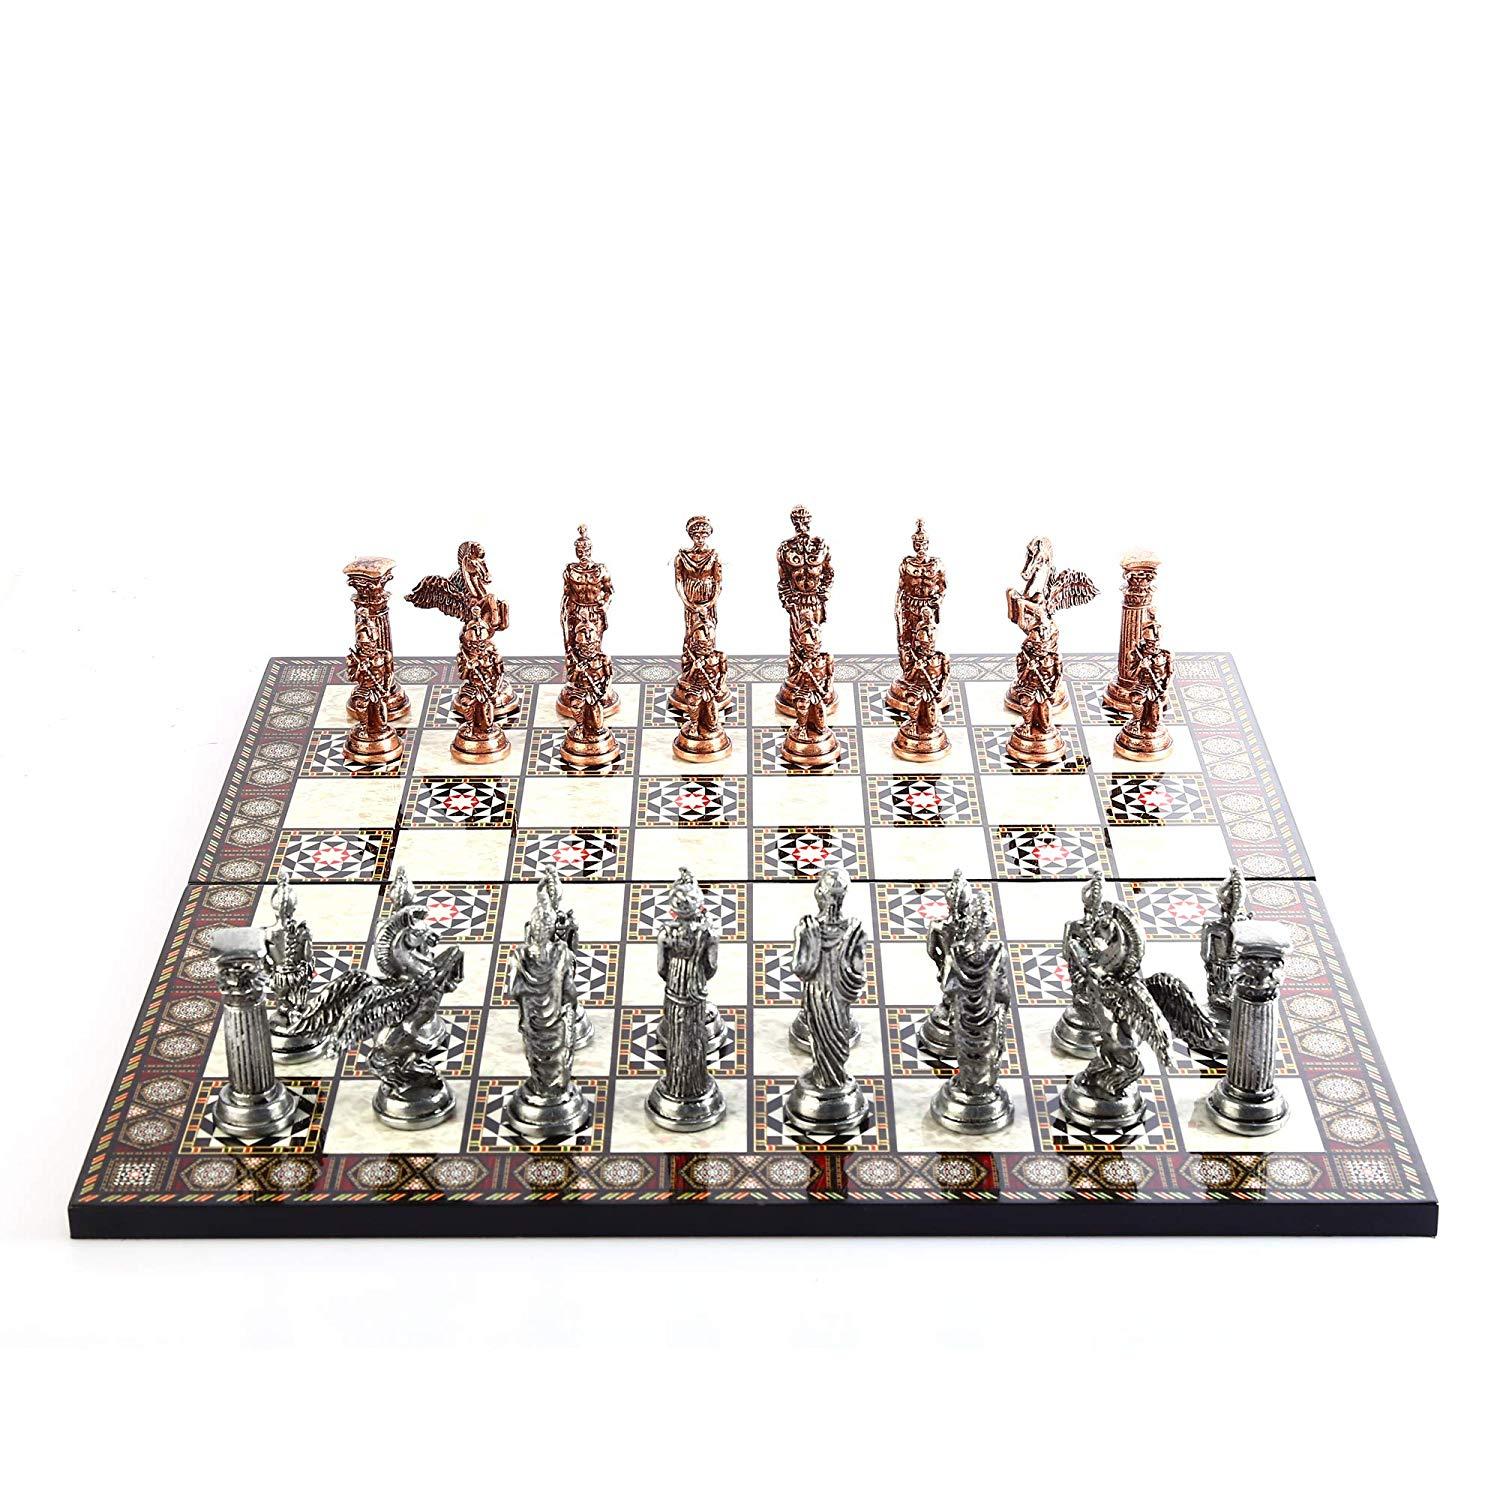 Изображение товара: Мифологический Pegasus антикварные медные фигурки металлический Шахматный набор, детали ручной работы, перламутровый дизайн деревянная шахматная доска король 9,5 см